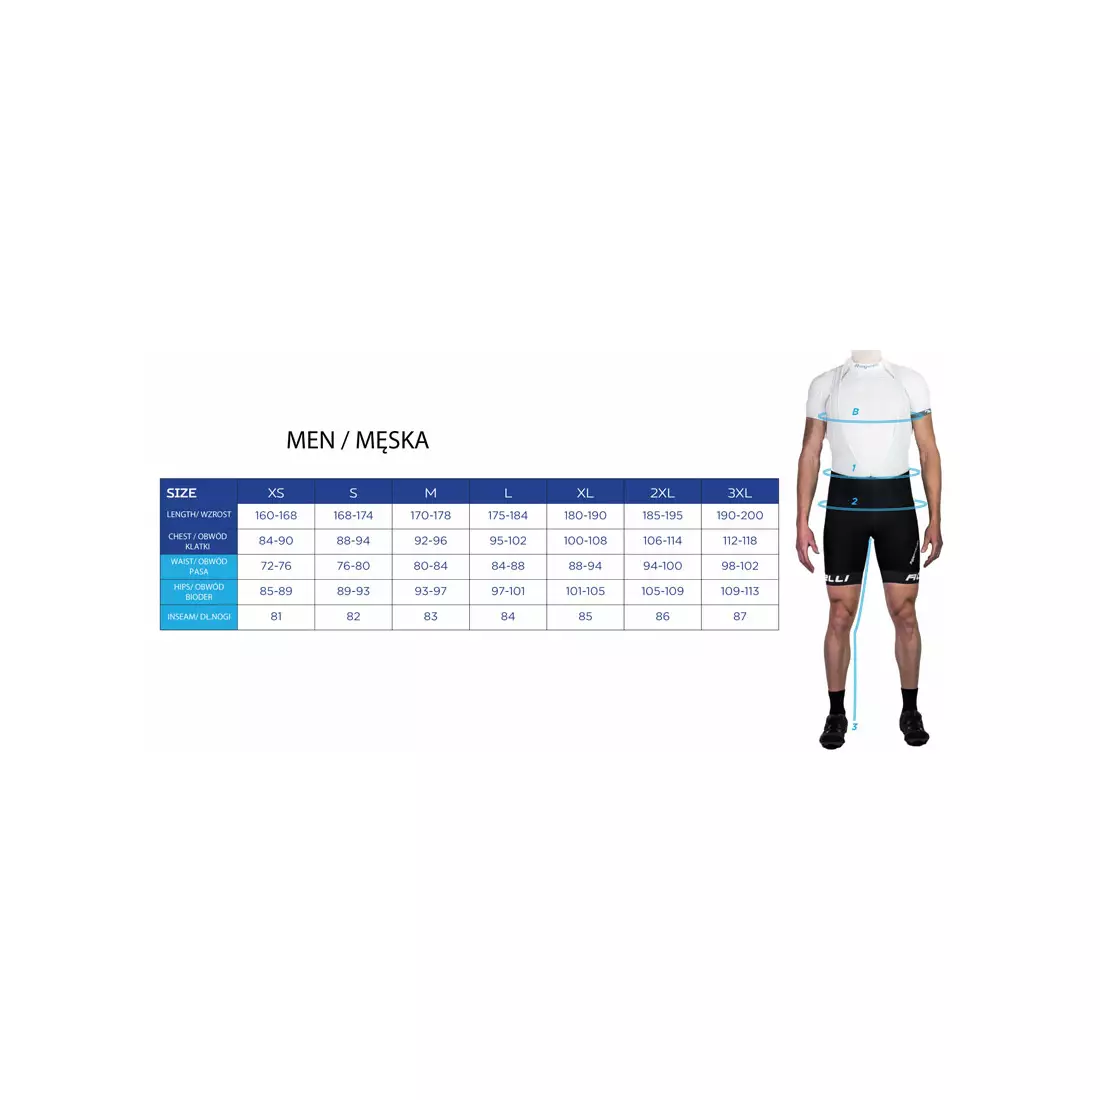 ROGELLI TRI FLORIDA 030.001 pánsky triatlonový oblek, modro-čierna